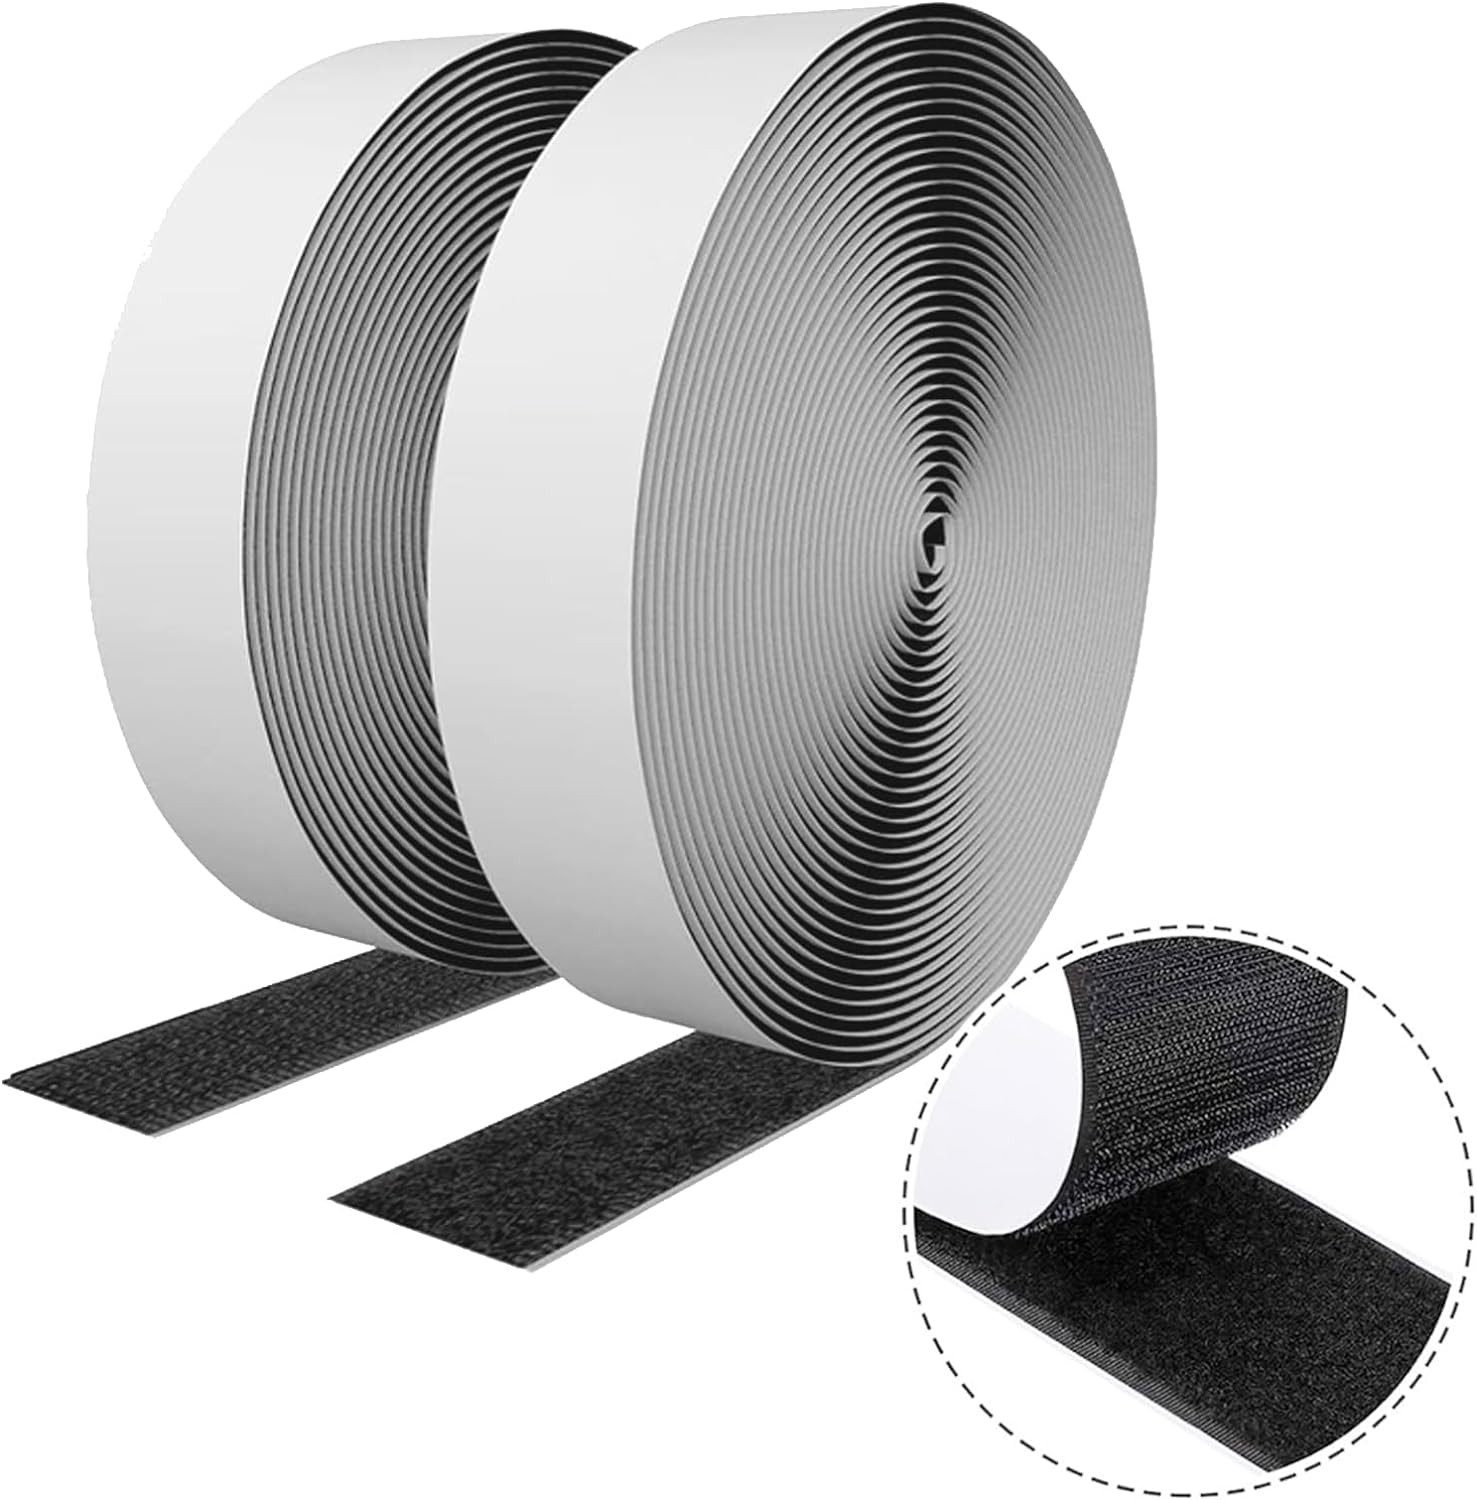 Klettband Klettband Selbstklebend Doppelseitig 2er Set Velcro Tape 10m x 20mm